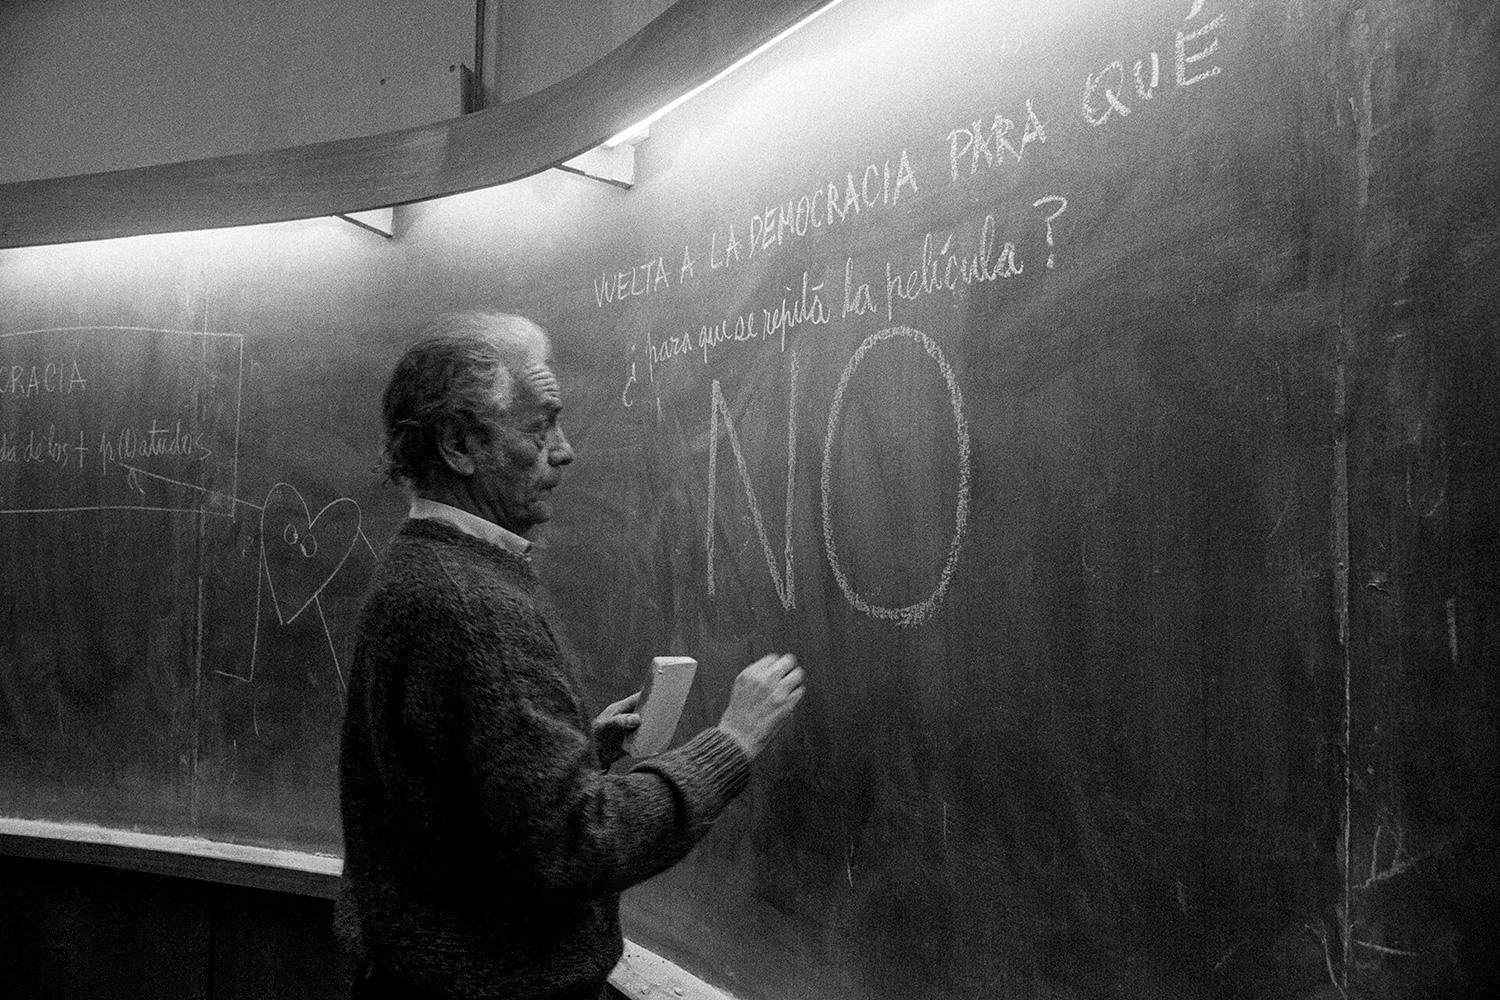 Álvaro Hoppe exhibirá parte importante de su obra Plebiscito en Chile, 1988, colección de fotografías que muestran el proceso político, histórico y social chileno que culminó con el plebiscito de 1988.